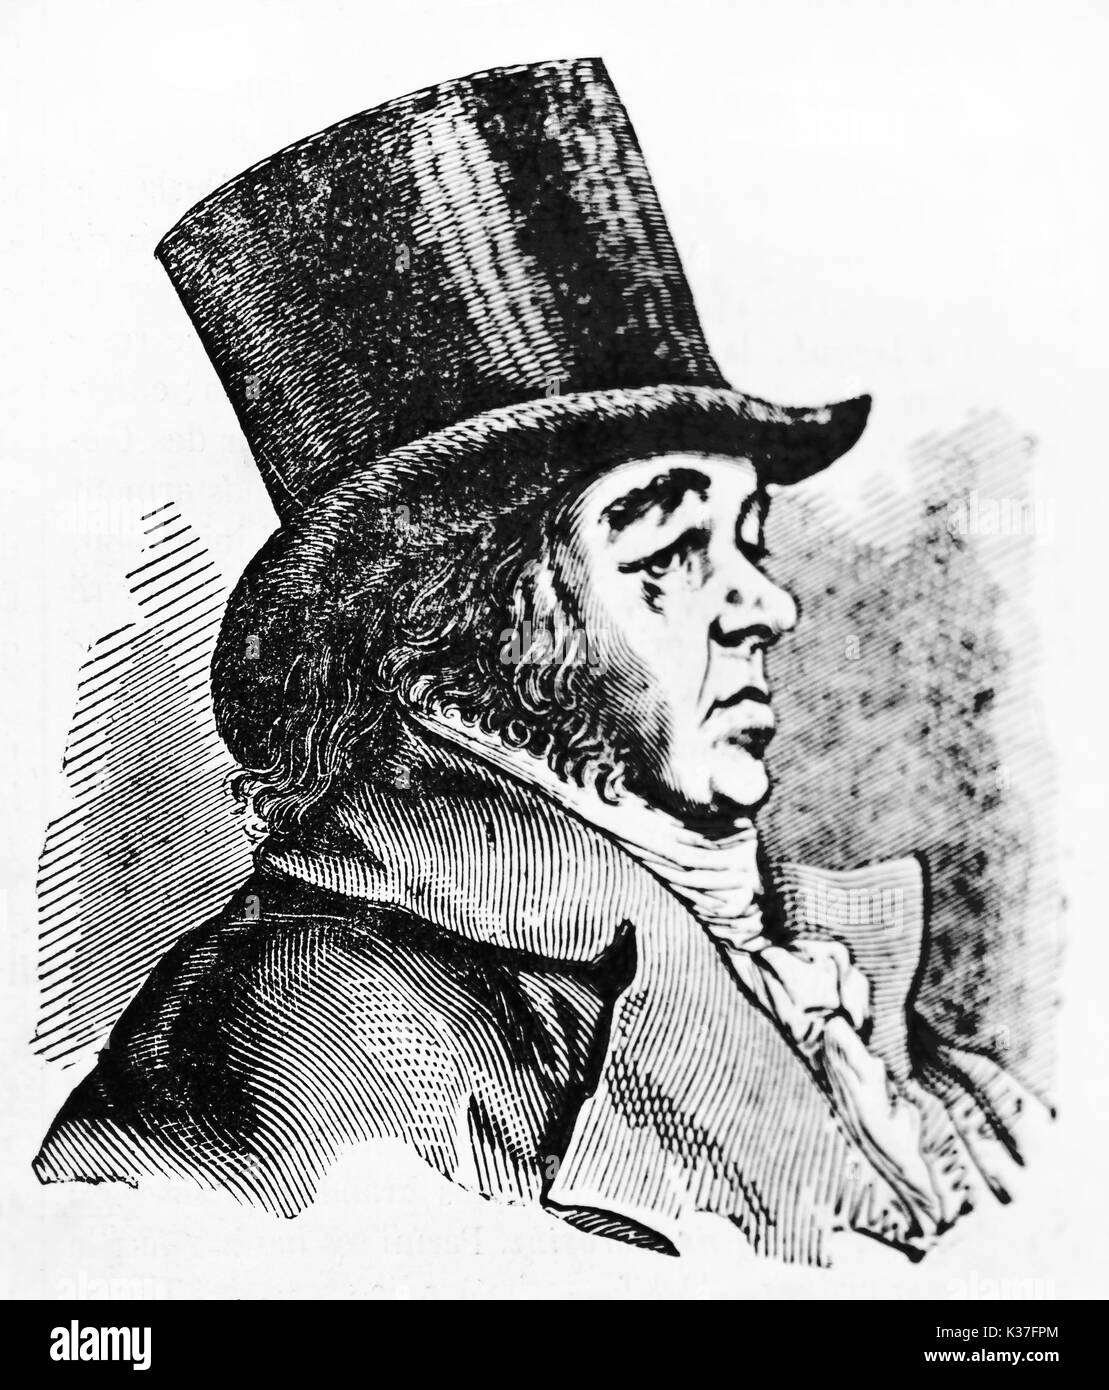 Antike seitliche Ansicht Portrait von Francisco Goya (1746 - 1828), spanischer romantische Maler, auf seinem Profil trägt einen Hut dargestellt. Von unbekannter Autor auf Magasin Pittoresque Paris 1834 veröffentlicht. Stockfoto